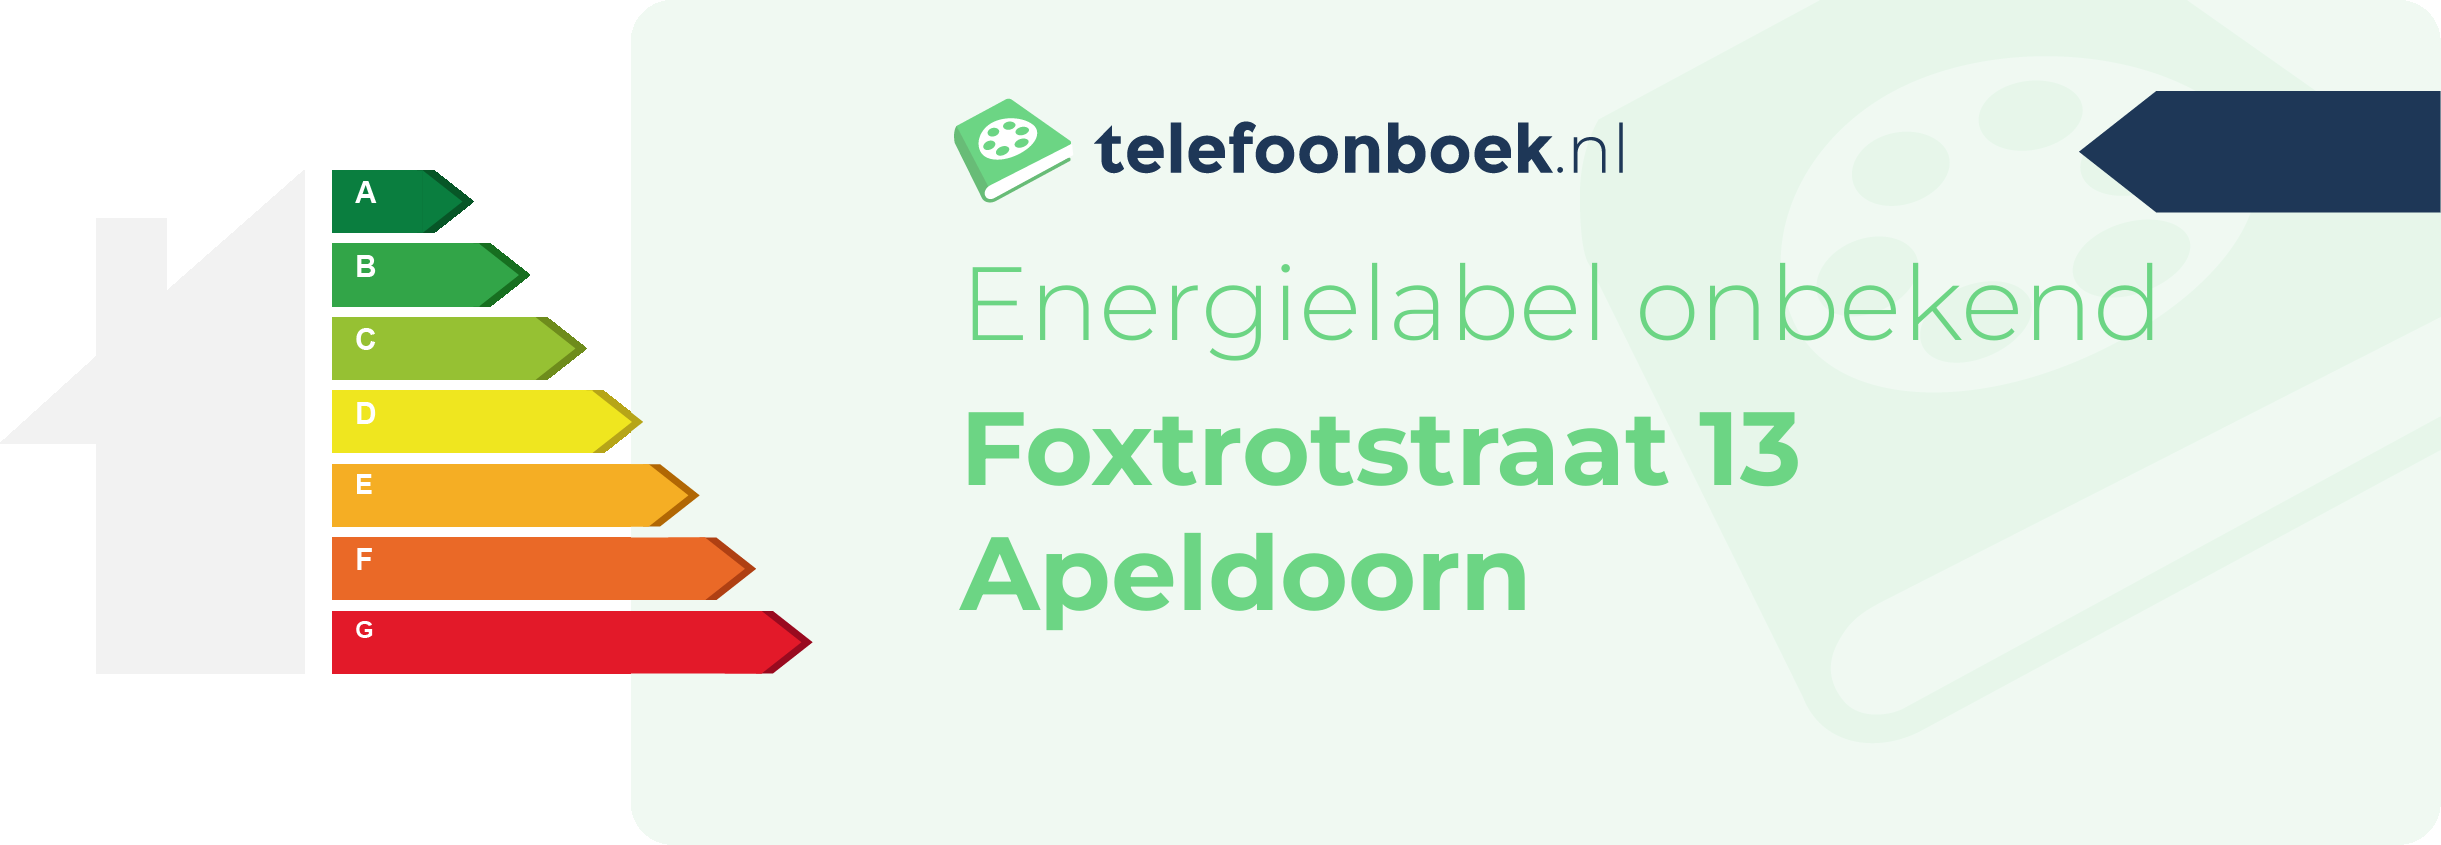 Energielabel Foxtrotstraat 13 Apeldoorn